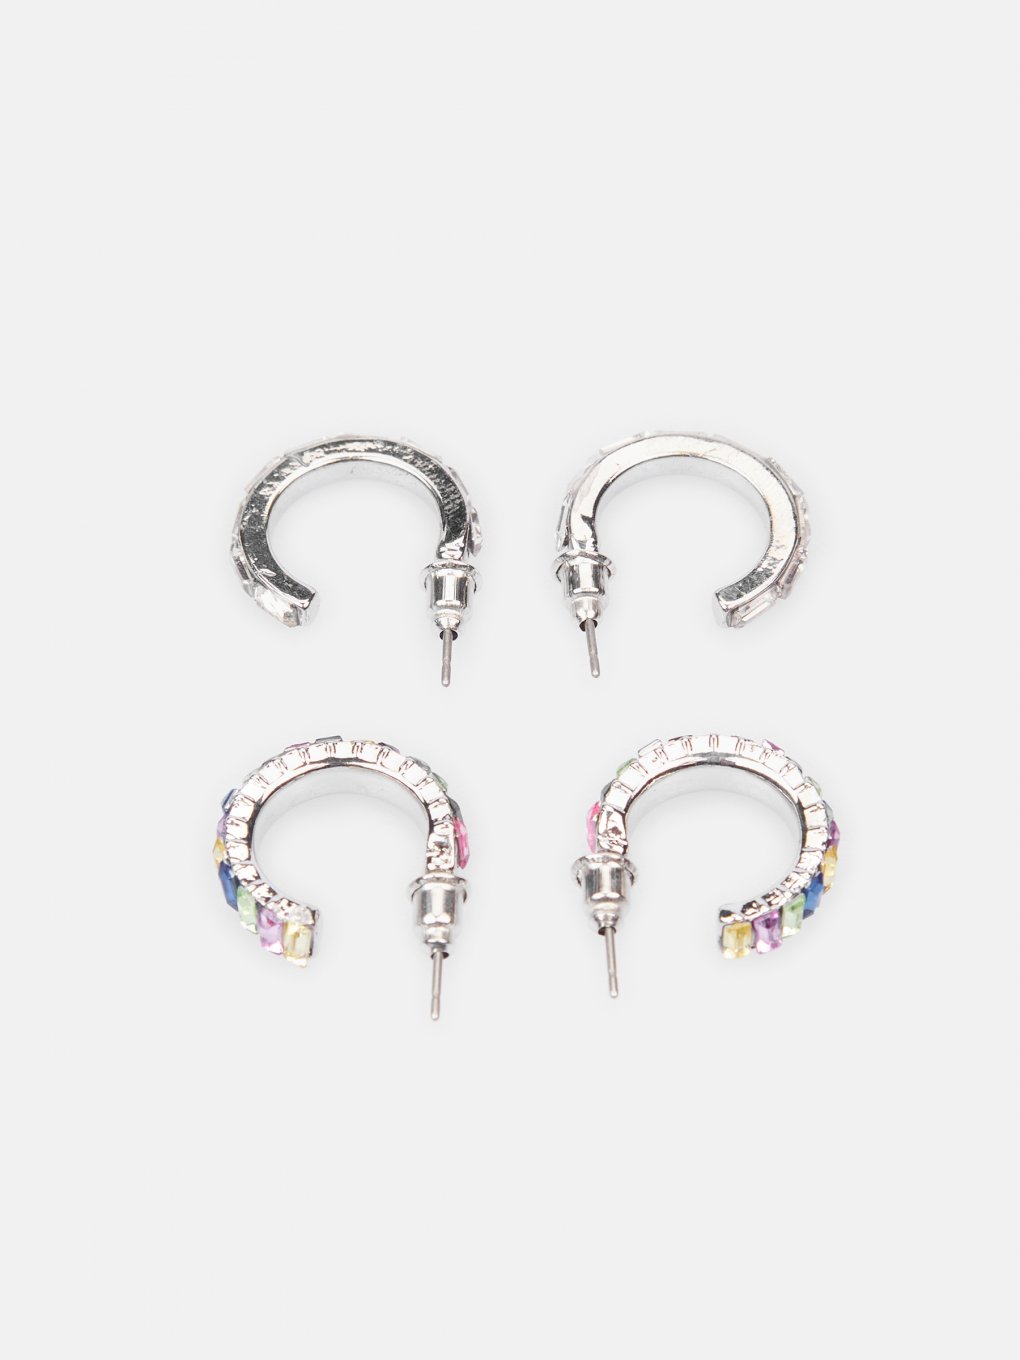 2 pairs of mini hoop earrings